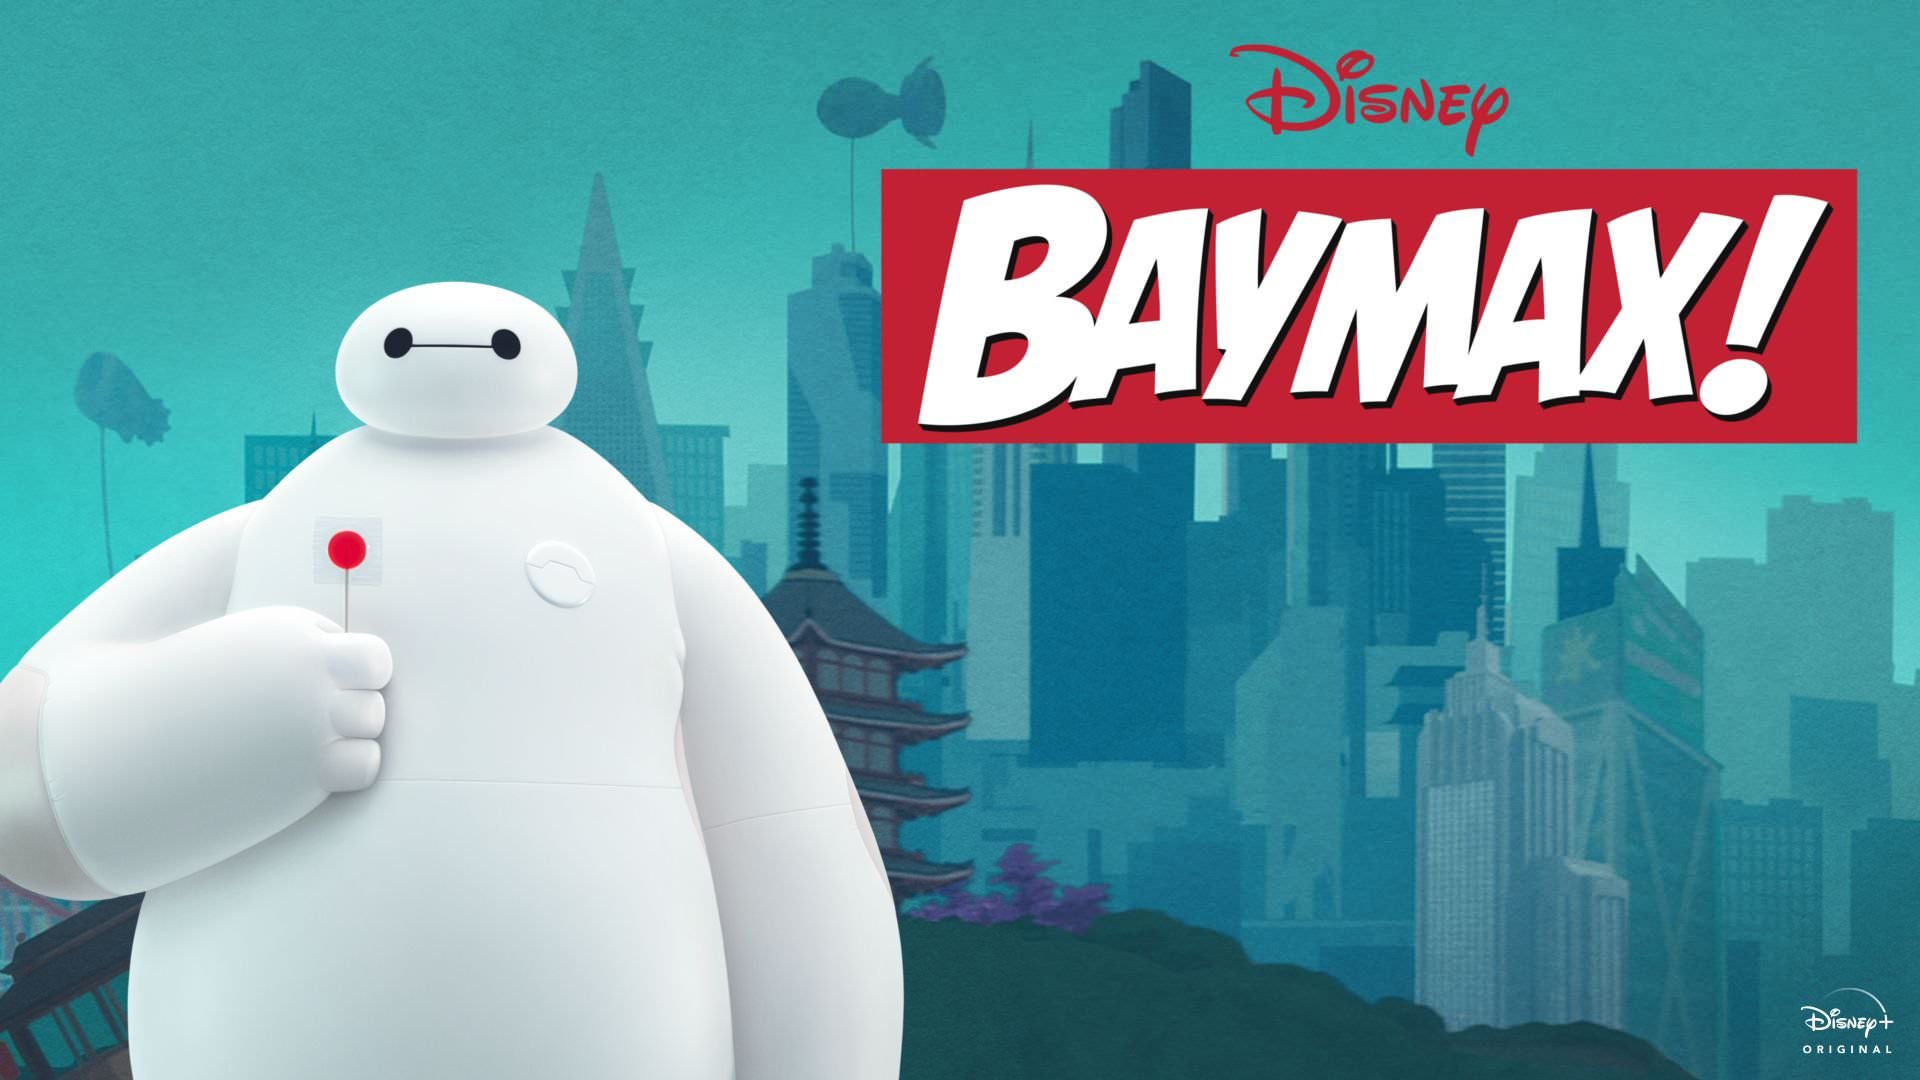 کمک بیمکس به مردم در دومین تریلر انیمیشن جدید Big Hero 6 | اعلام تاریخ پخش